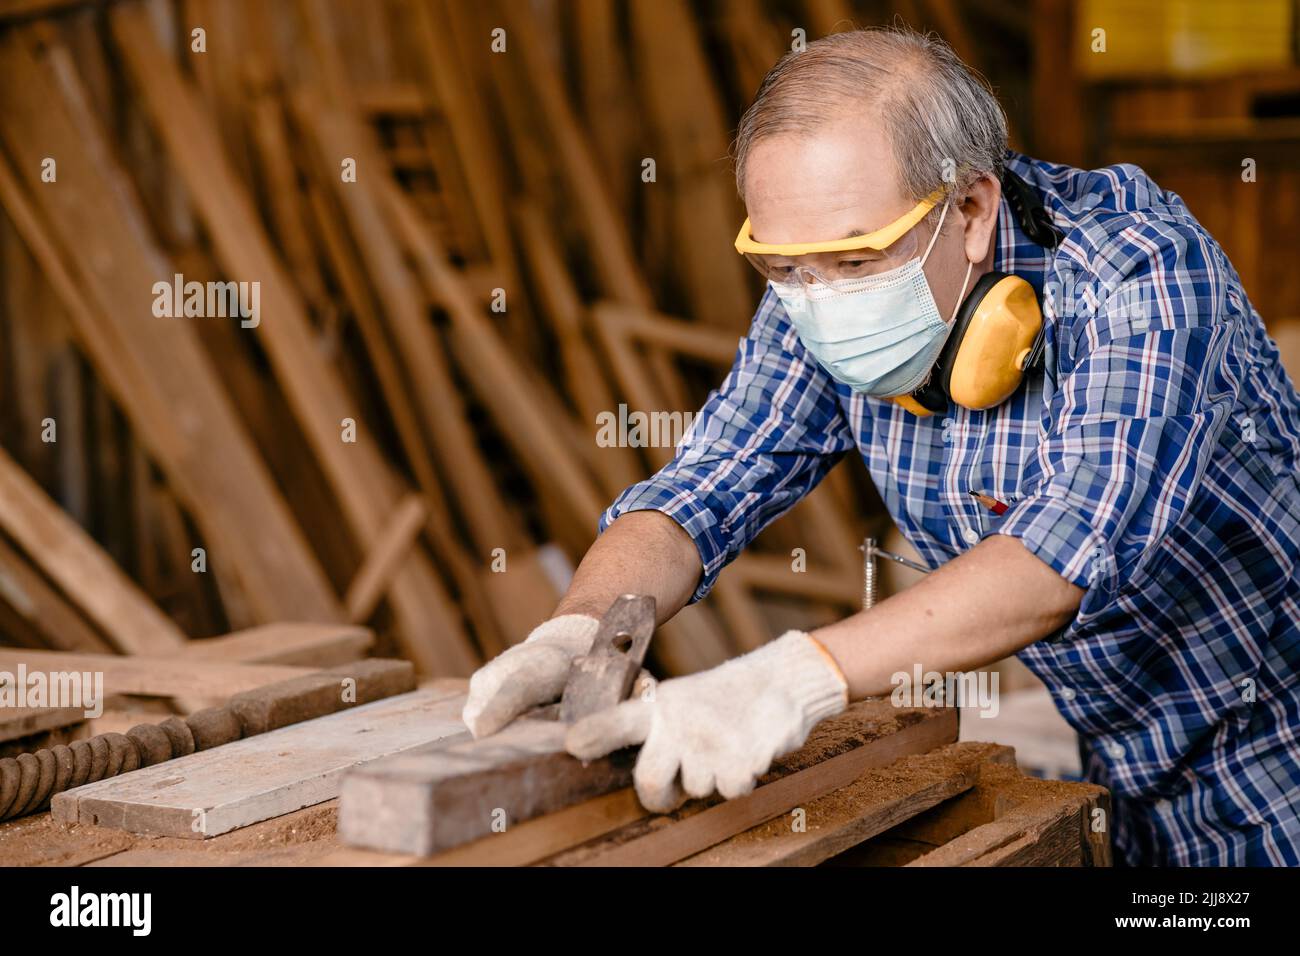 profesional carpintero fabricante de muebles de madera manualidades de trabajo en taller de madera con seguridad Foto de stock